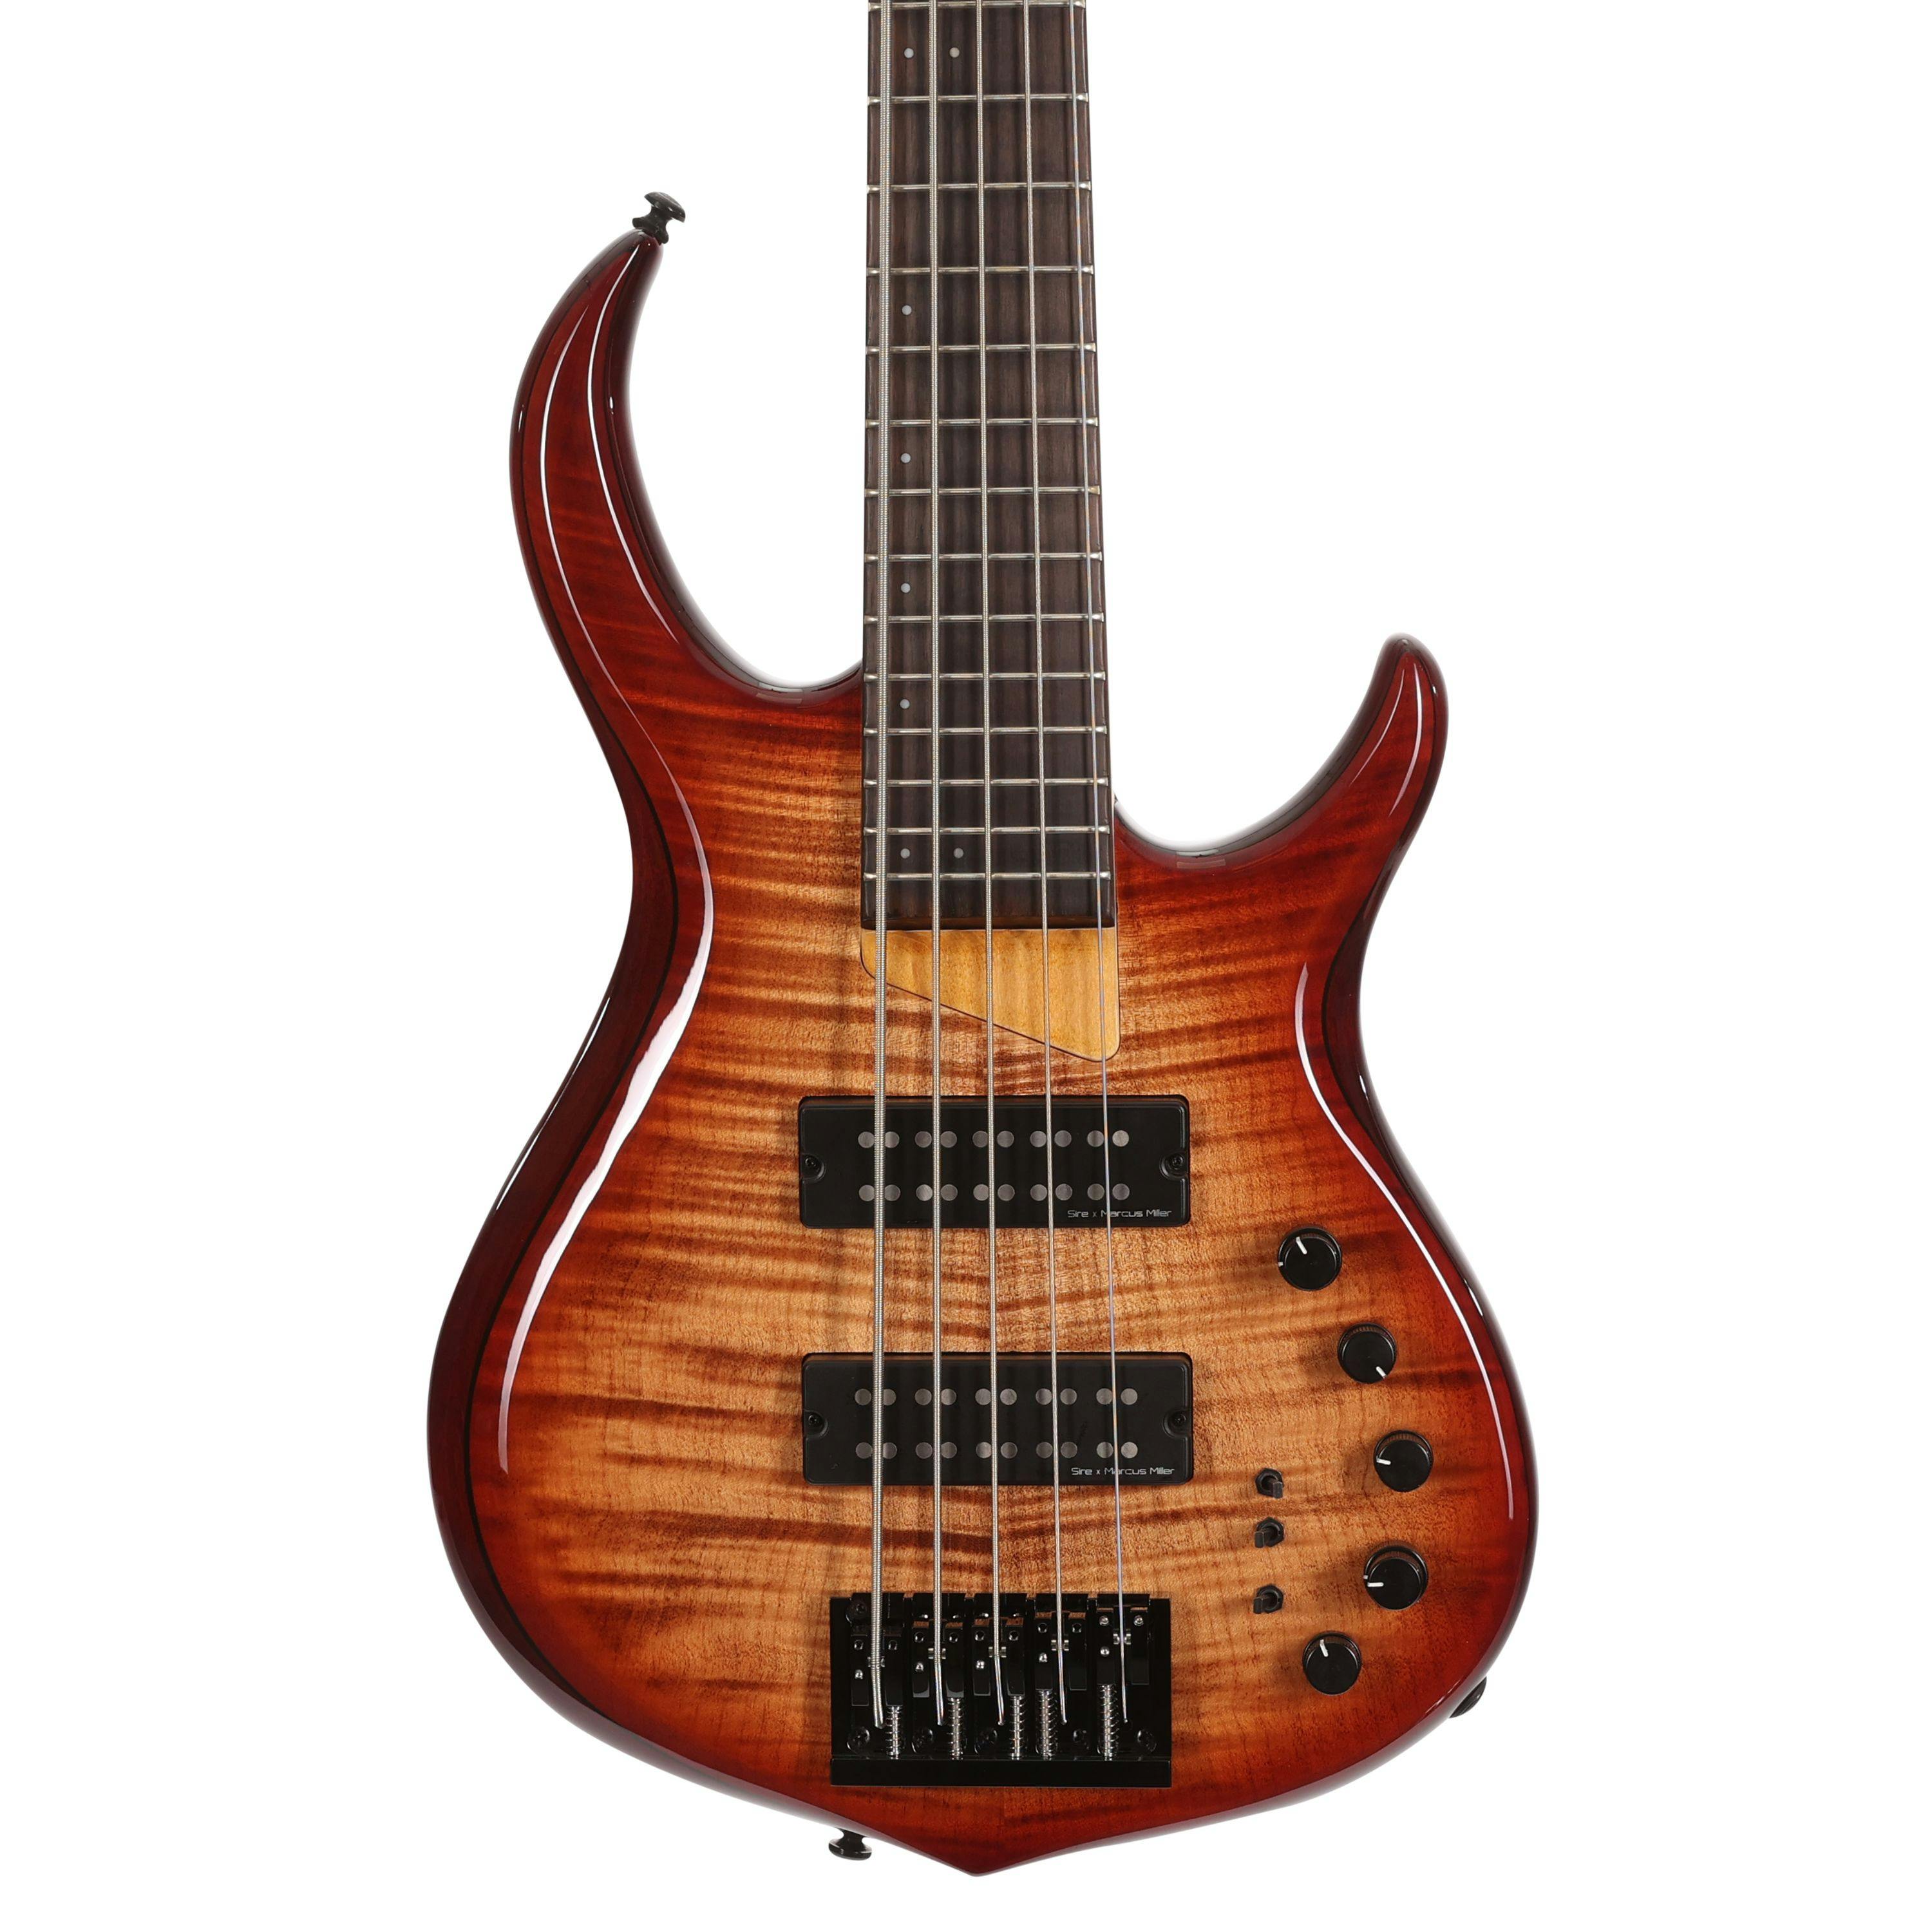 Bass Guitar 4 String P style Sunburst for Beginners iMEB873 